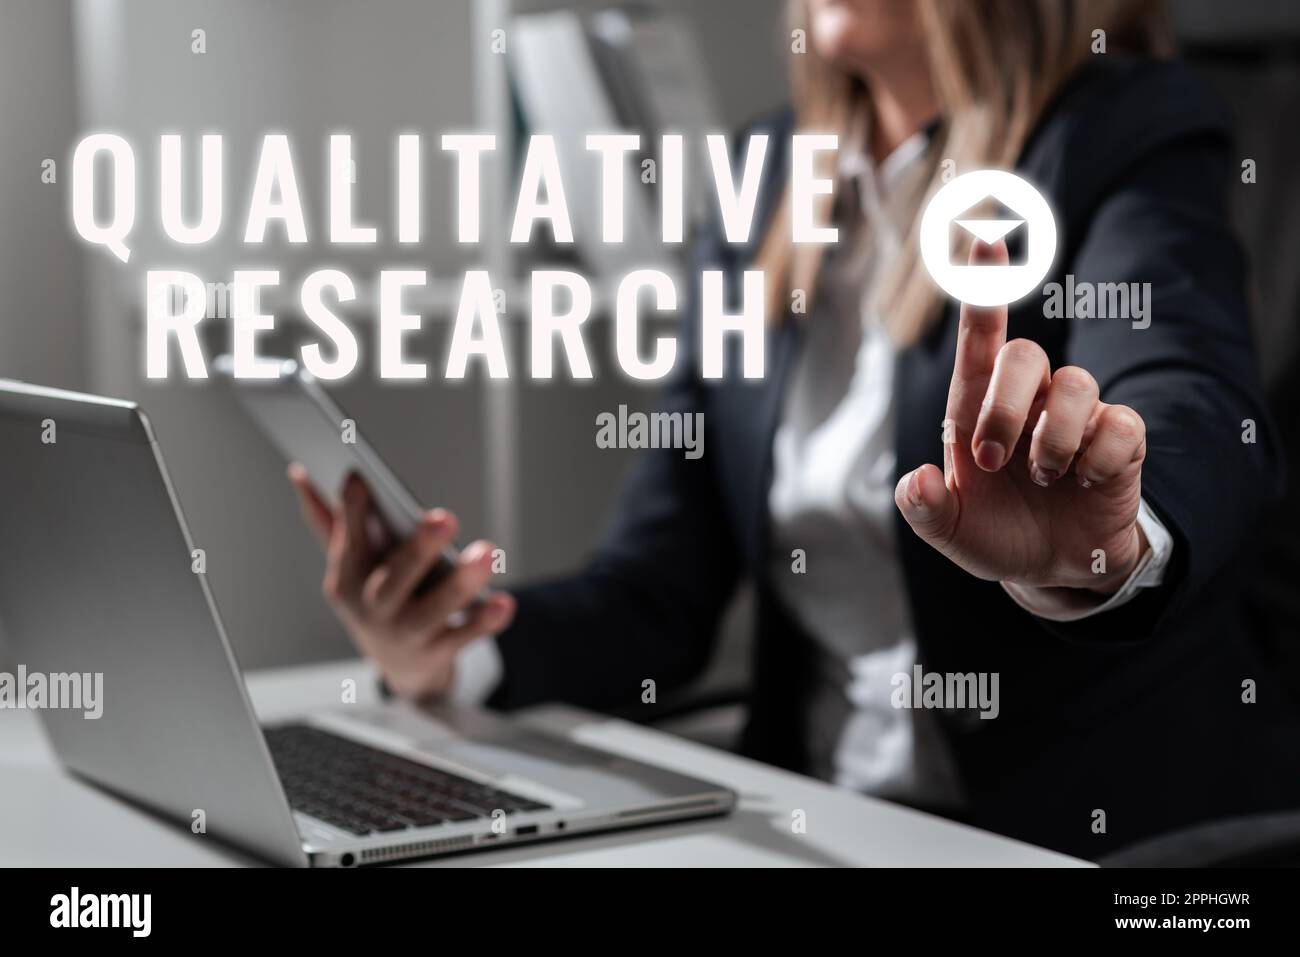 Légende de texte présentant la recherche qualitative. Concept signifie certifié pour effectuer un travail compétent expérimenté Banque D'Images